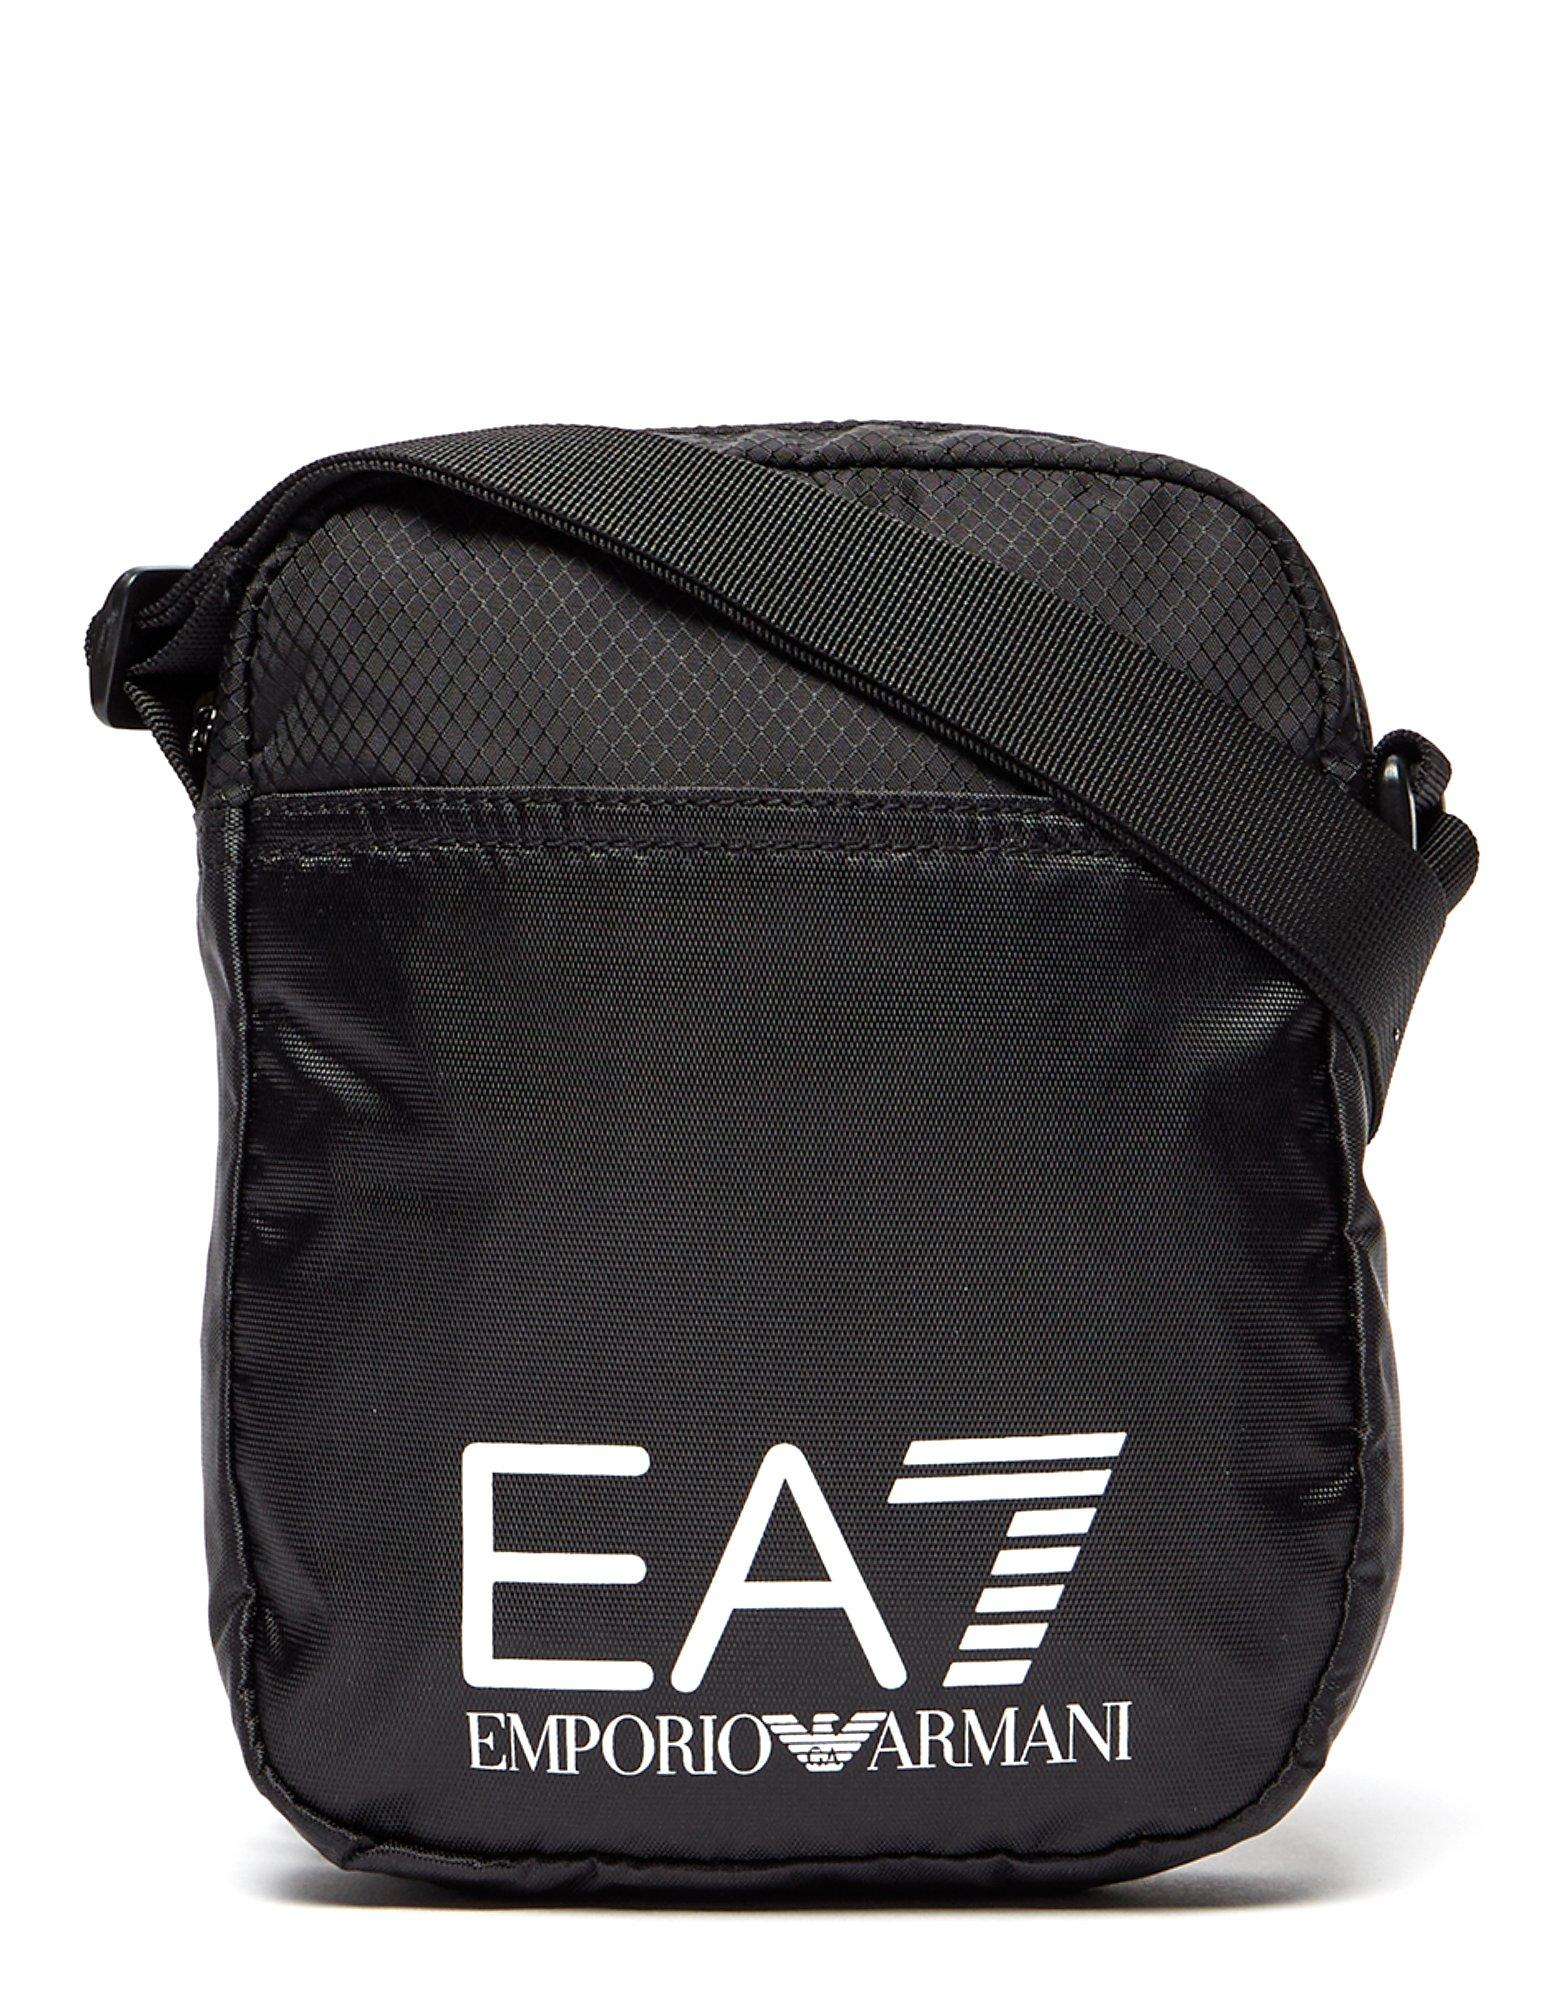 ea7 bags